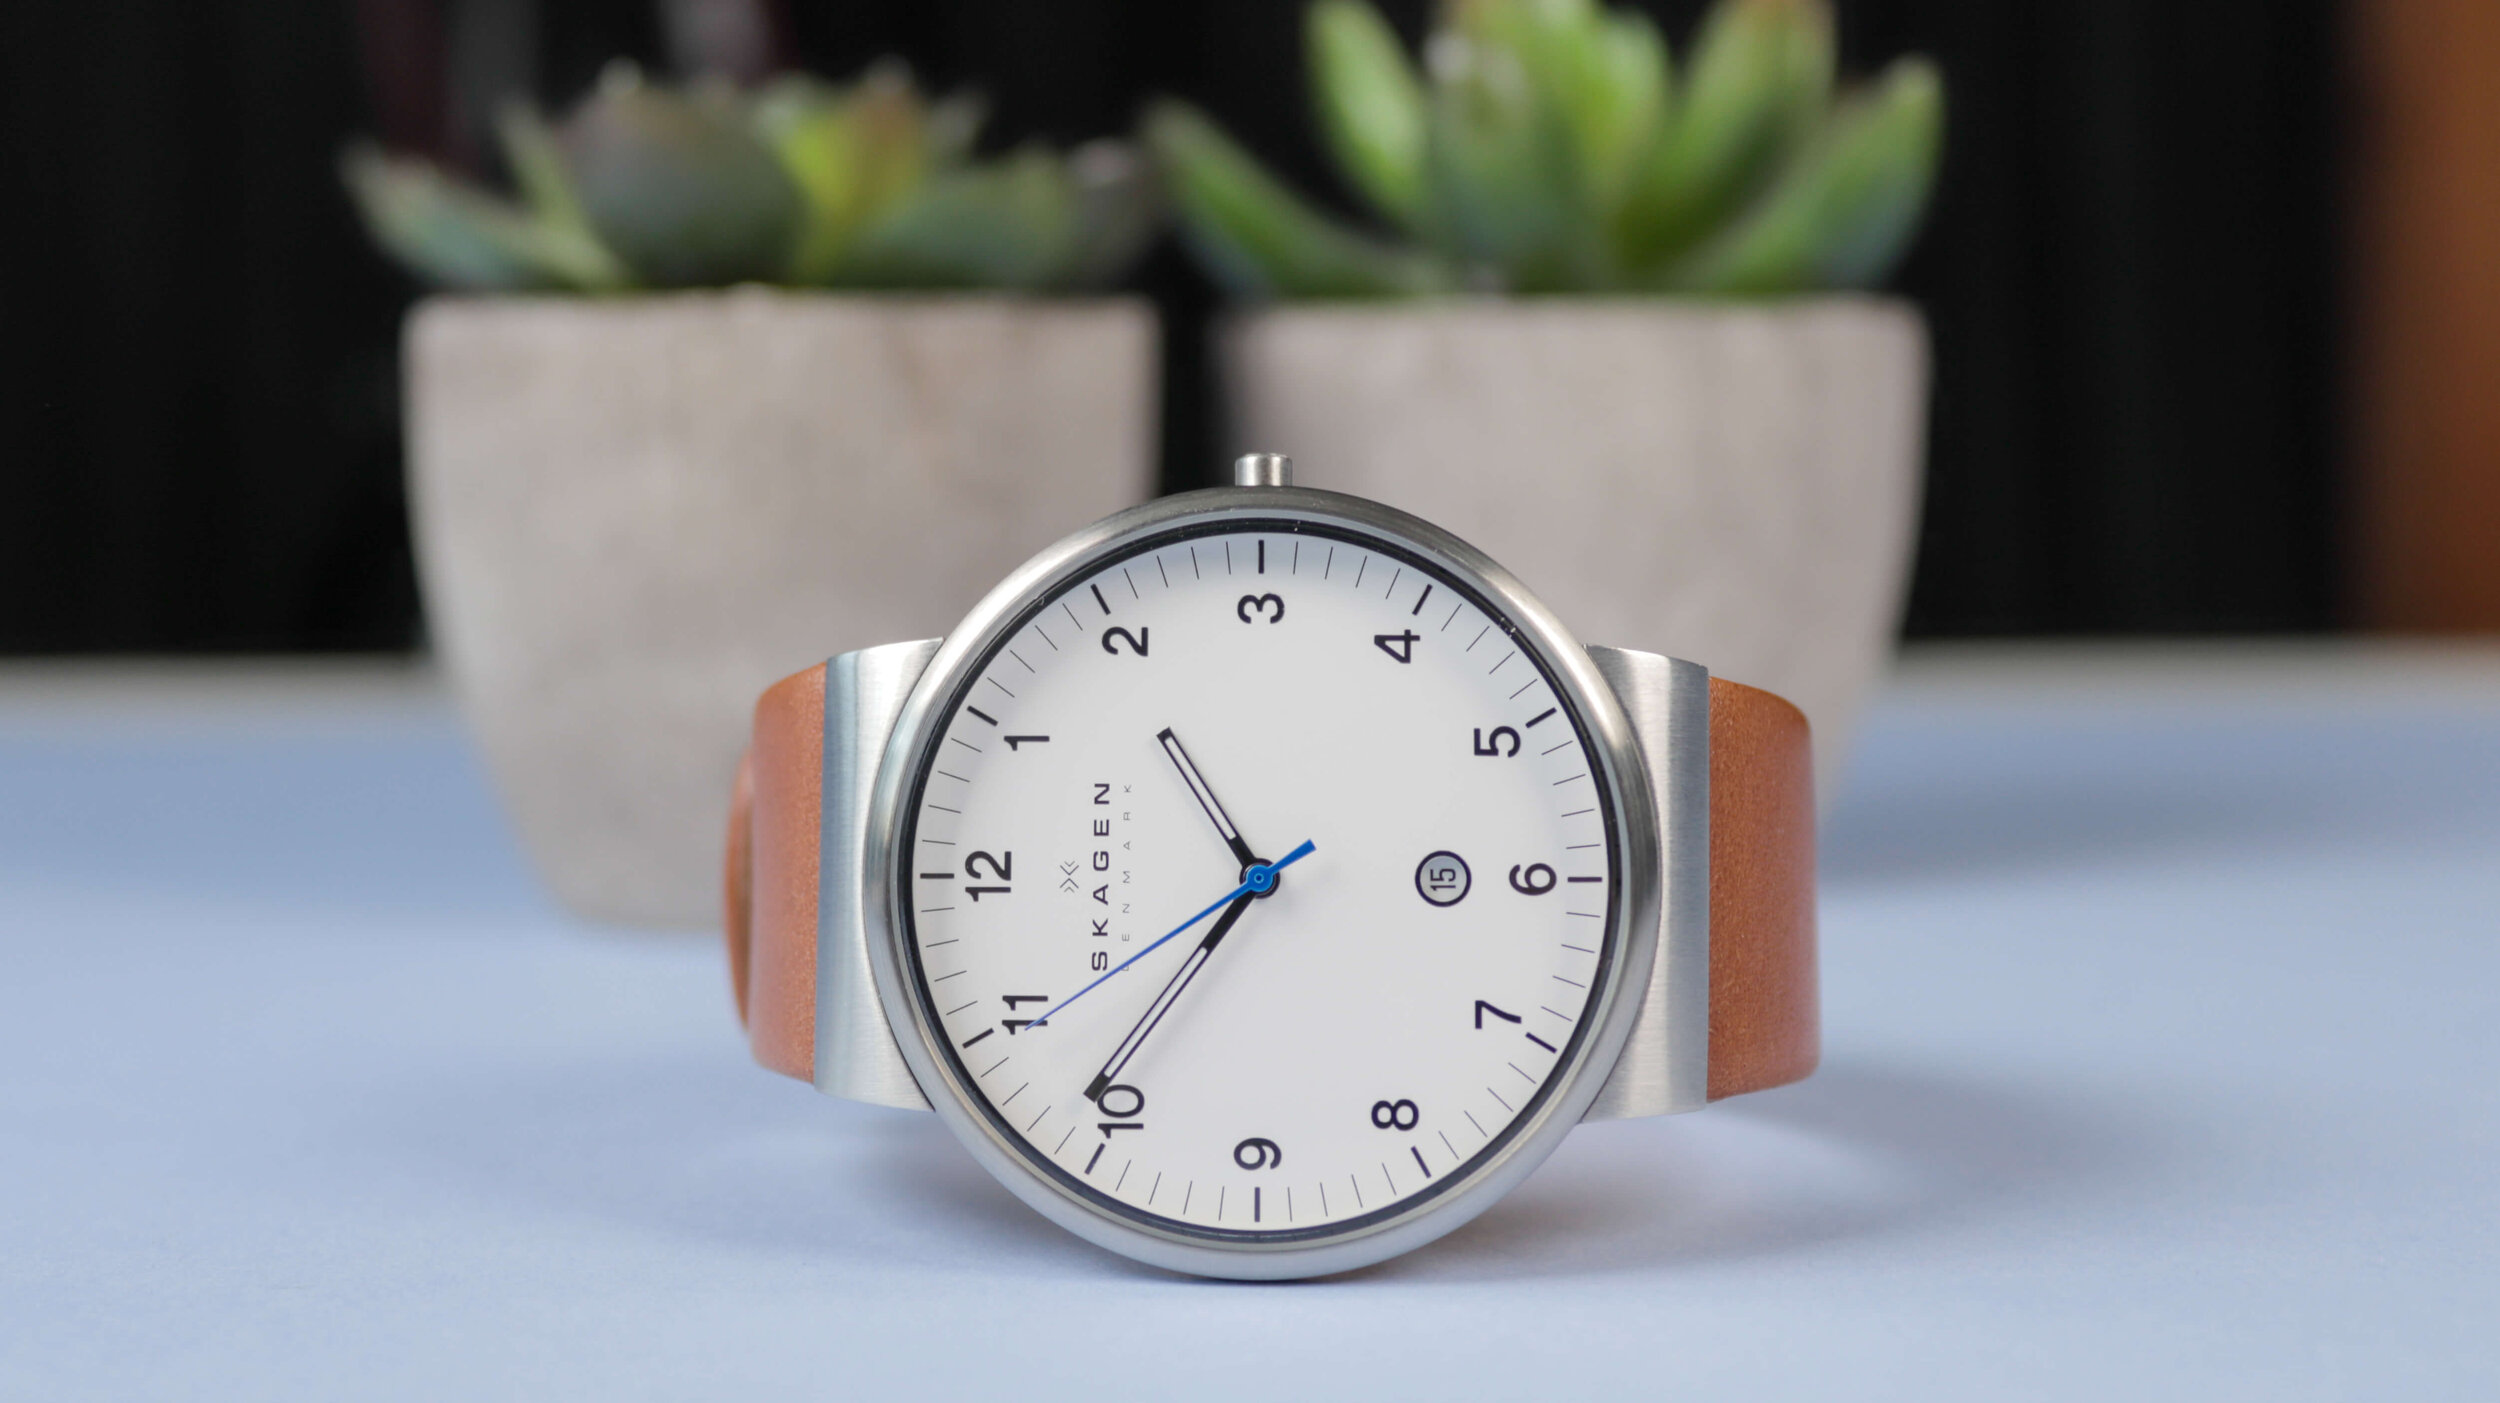 Cặp vợ chồng Henrik Jorst và Charlotte Jorst năm 1989 đã quyết định thành lập nên thương hiệu đồng hồ lấy tên là Skagen Design tại Đan Mạch